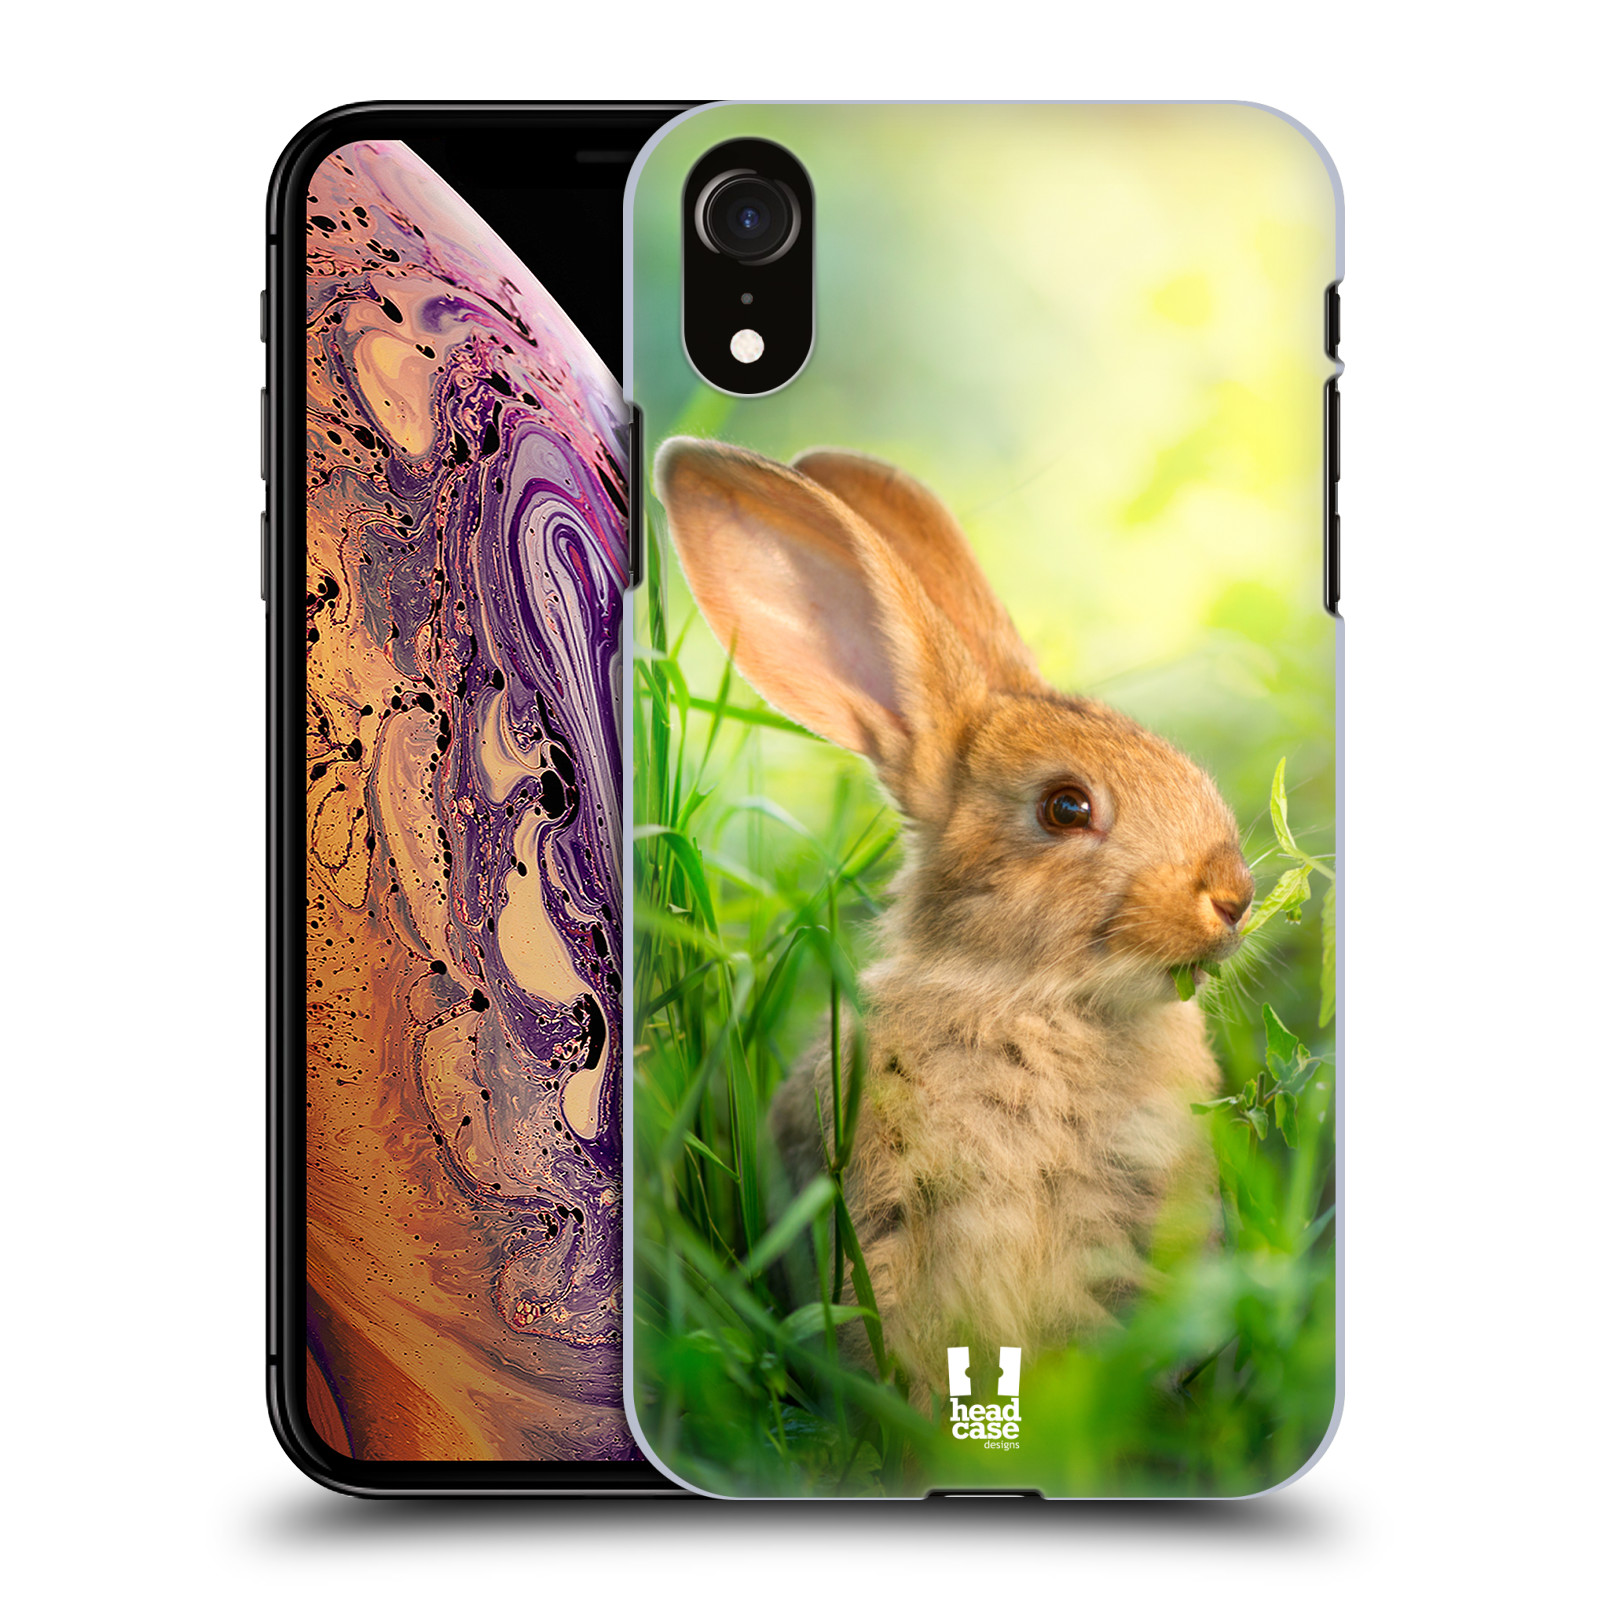 HEAD CASE plastový obal na mobil Apple Iphone XR vzor Divočina, Divoký život a zvířata foto ZAJÍČEK V TRÁVĚ ZELENÁ